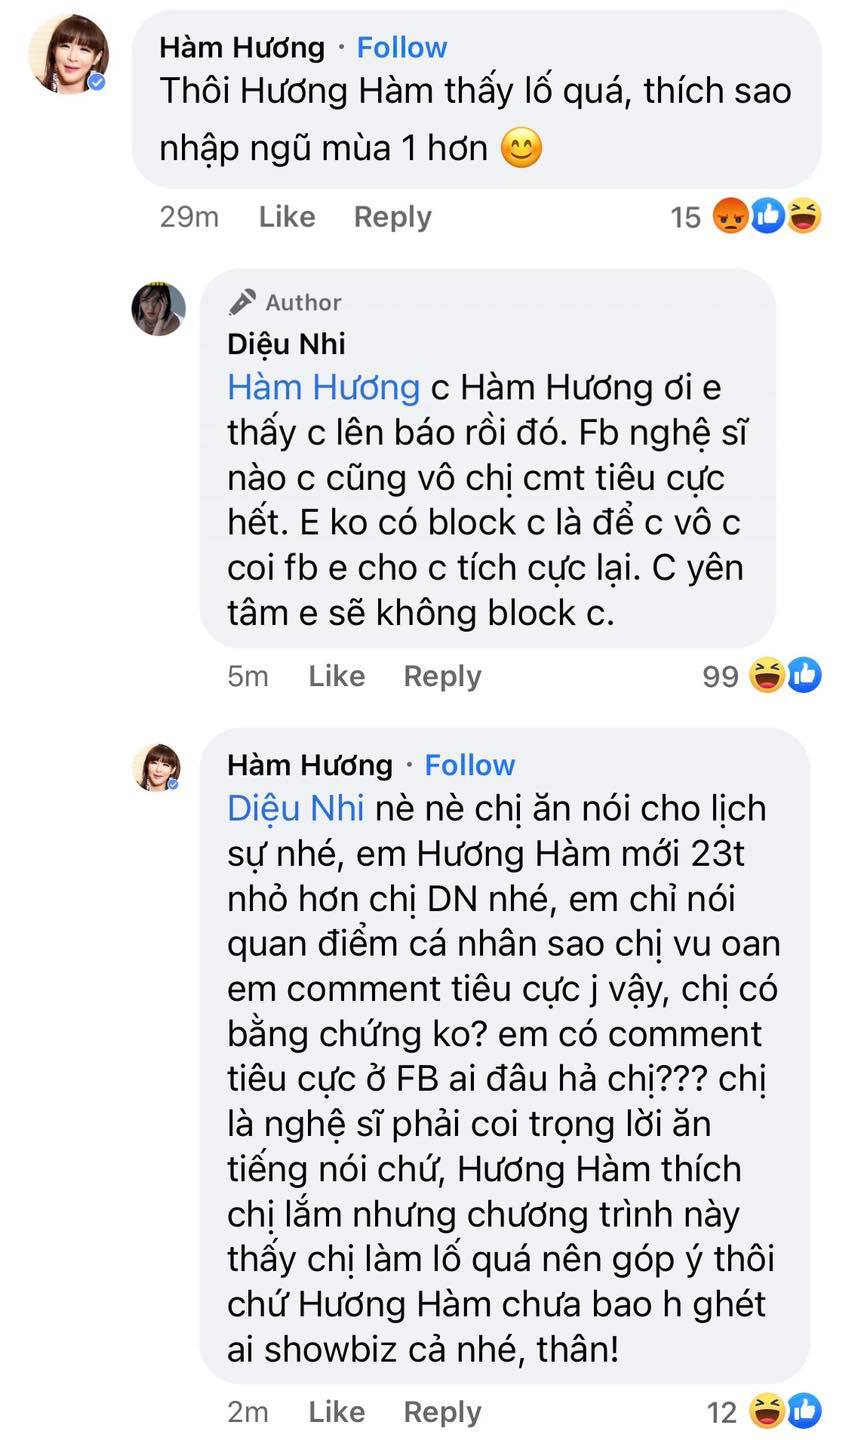 Bị Facebooker Hàm Hương chê làm lố ở Sao nhập ngũ, Diệu Nhi thẳng thắn đáp trả ngay và luôn